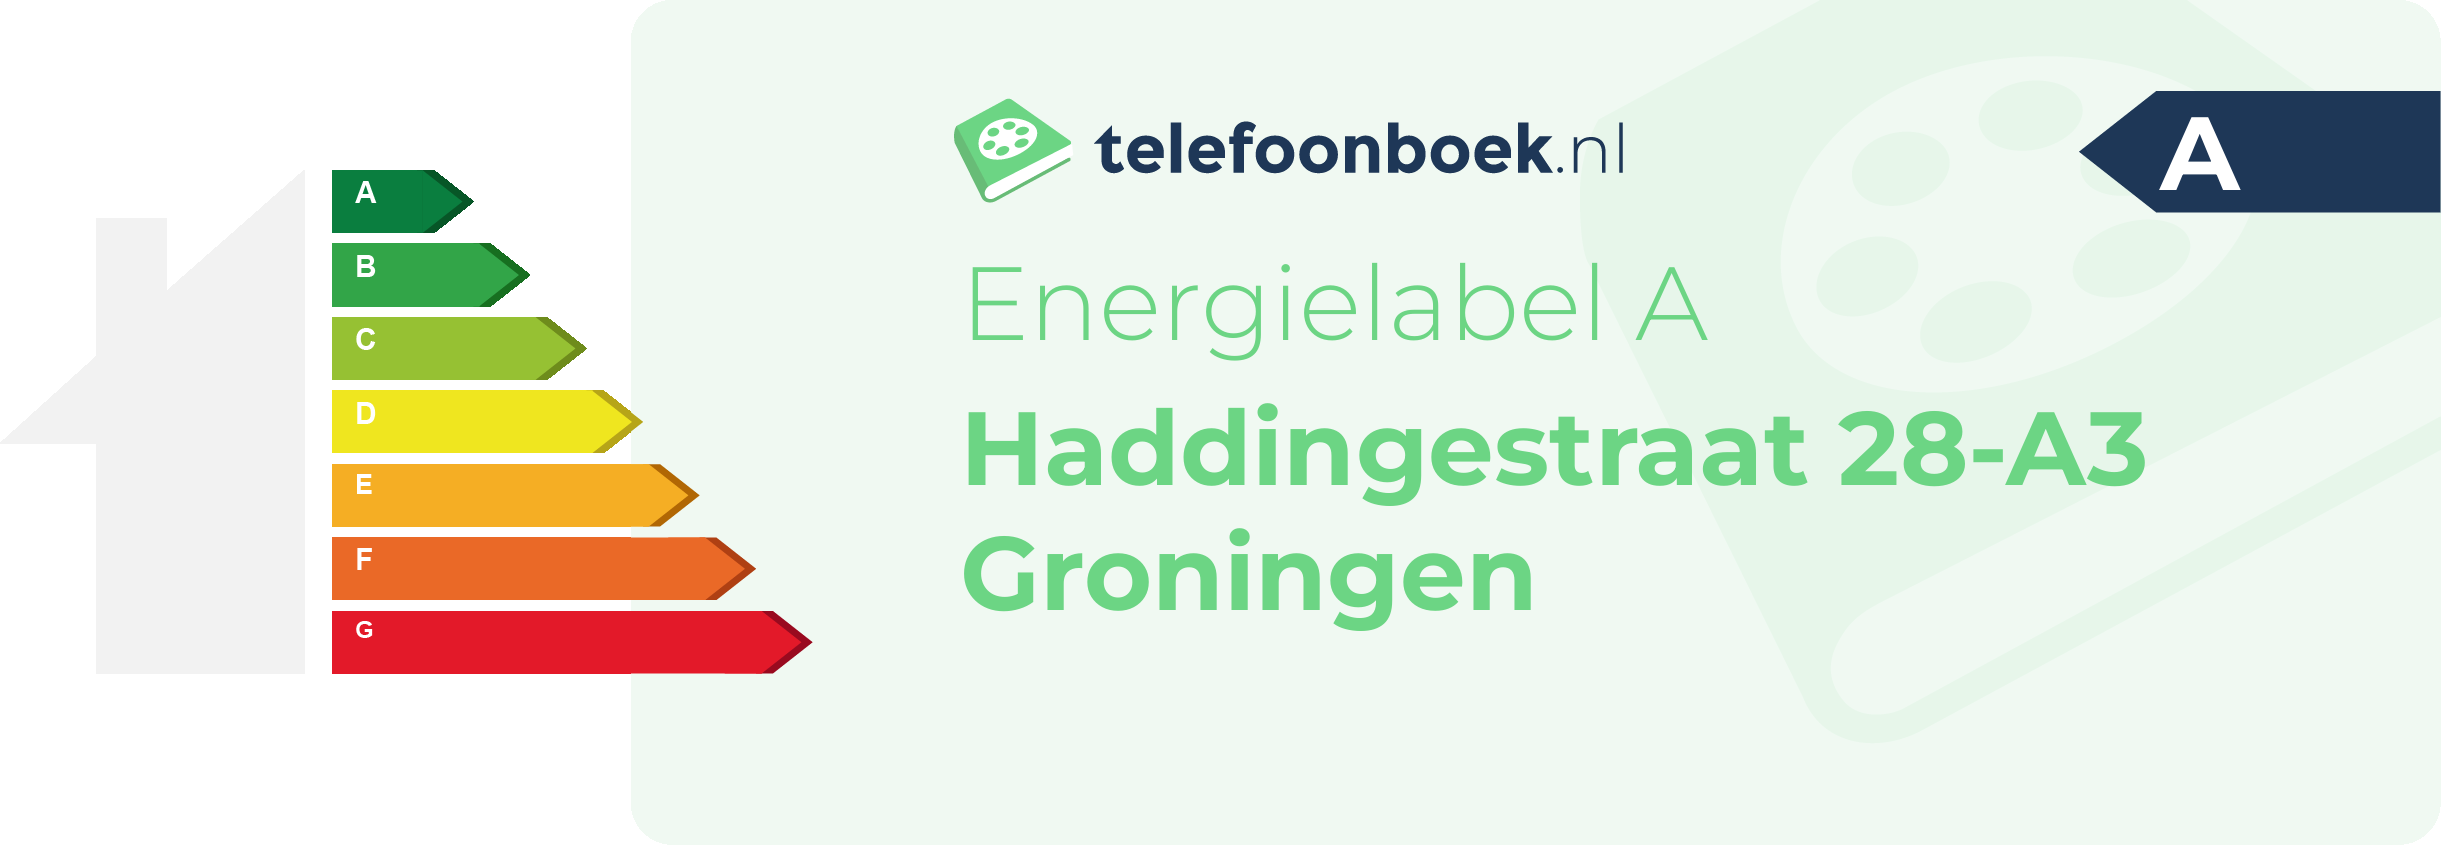 Energielabel Haddingestraat 28-A3 Groningen